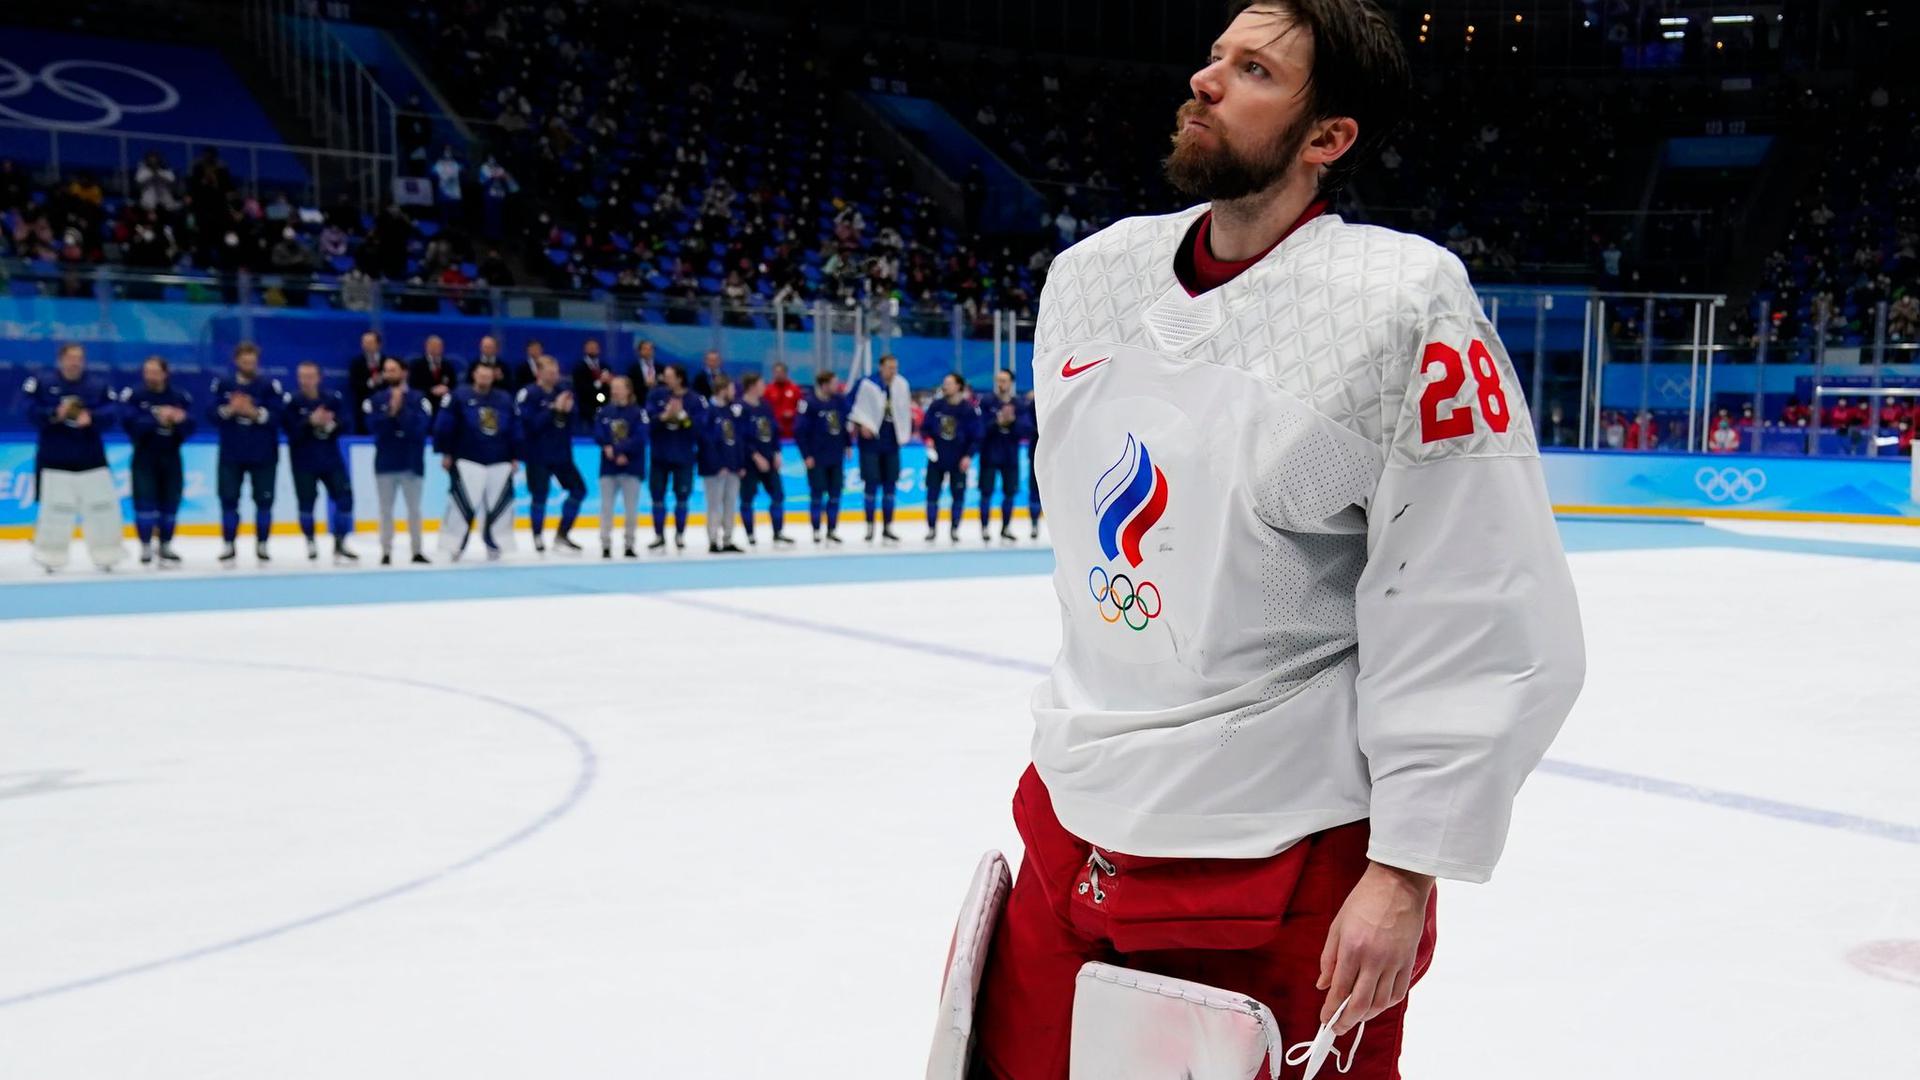 Der russische Eishockey-Torhüter Iwan Fedotow wollte eigentlich in die NHL wechseln.